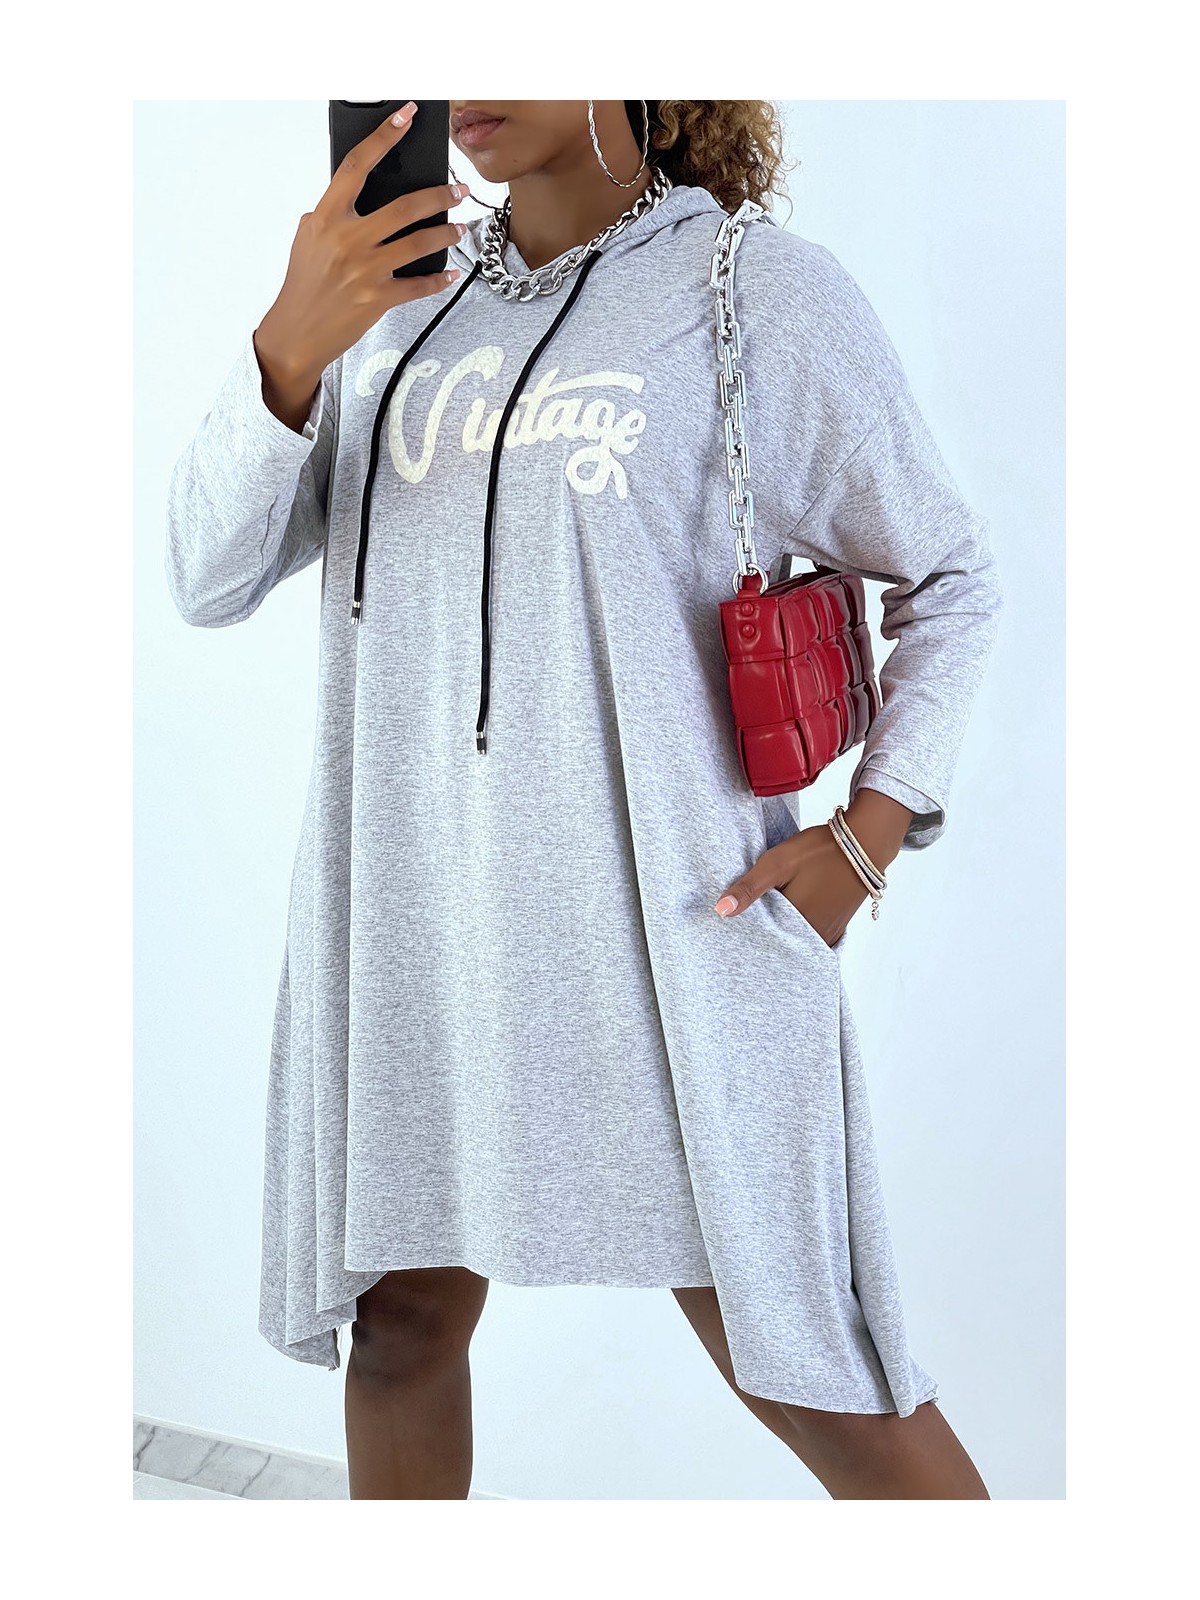 Robe tunique grise avec écriture vintage et capuche - 2